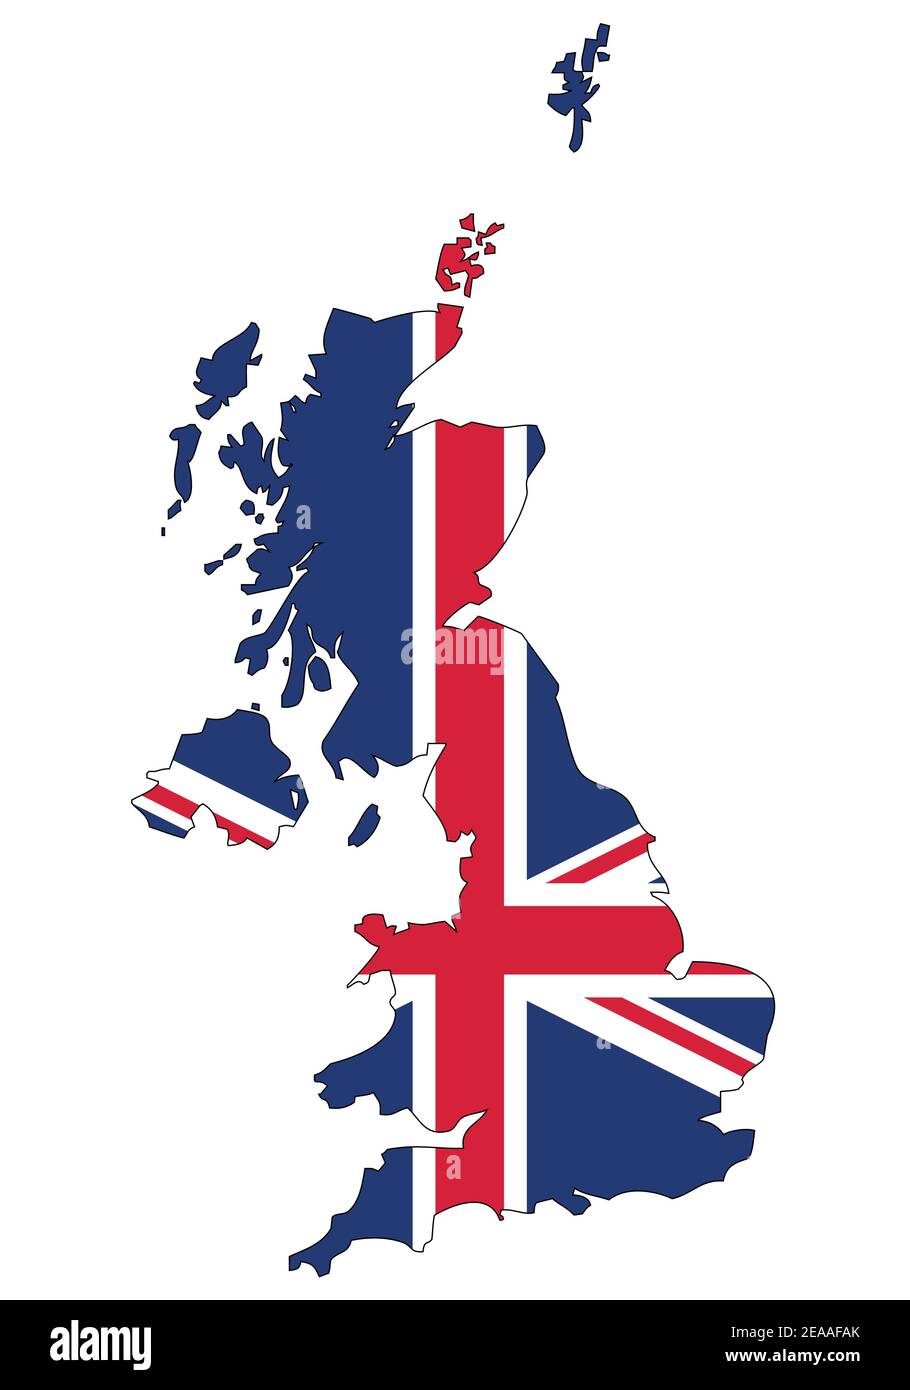 Vereinigtes Königreich von Großbritannien und Nordirland Karte mit Flagge - Umriss eines Staates mit einer Nationalflagge, weißer Hintergrund, Vektor Stock Vektor